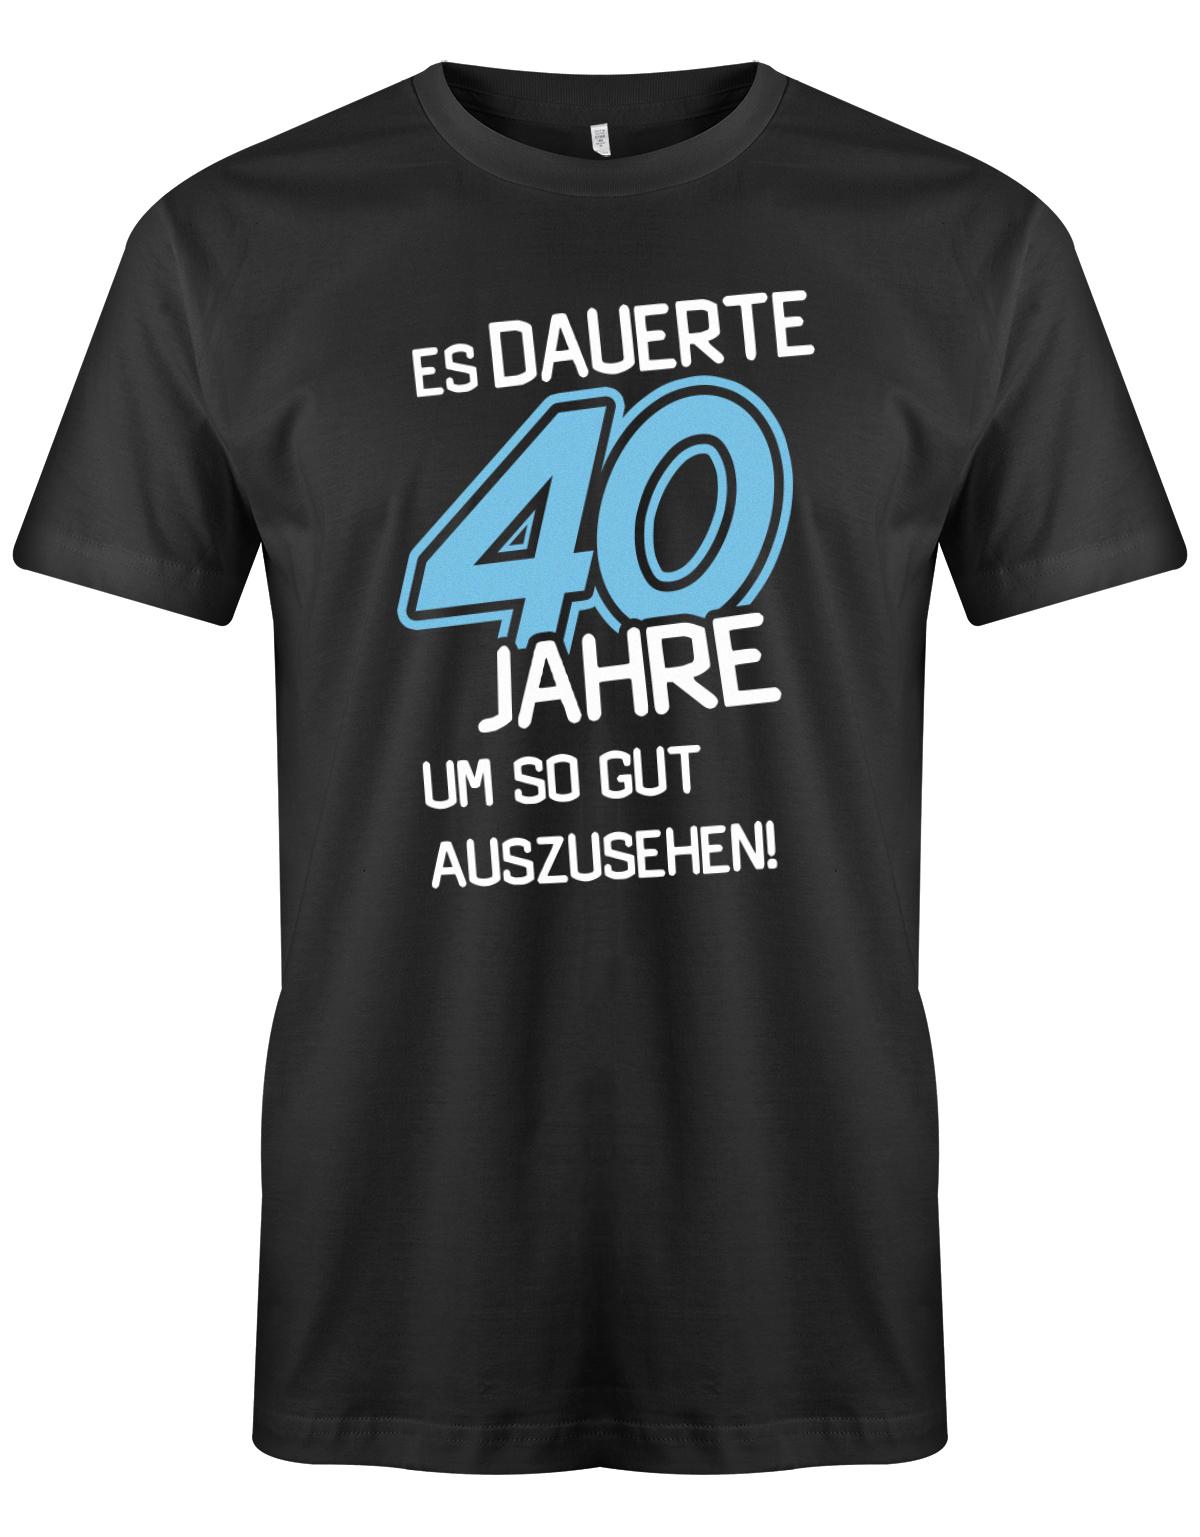 Es dauerte 40 Jahre um so gut auszusehen - T-Shirt 40 Geburtstag Männer - 1983 Schwarz